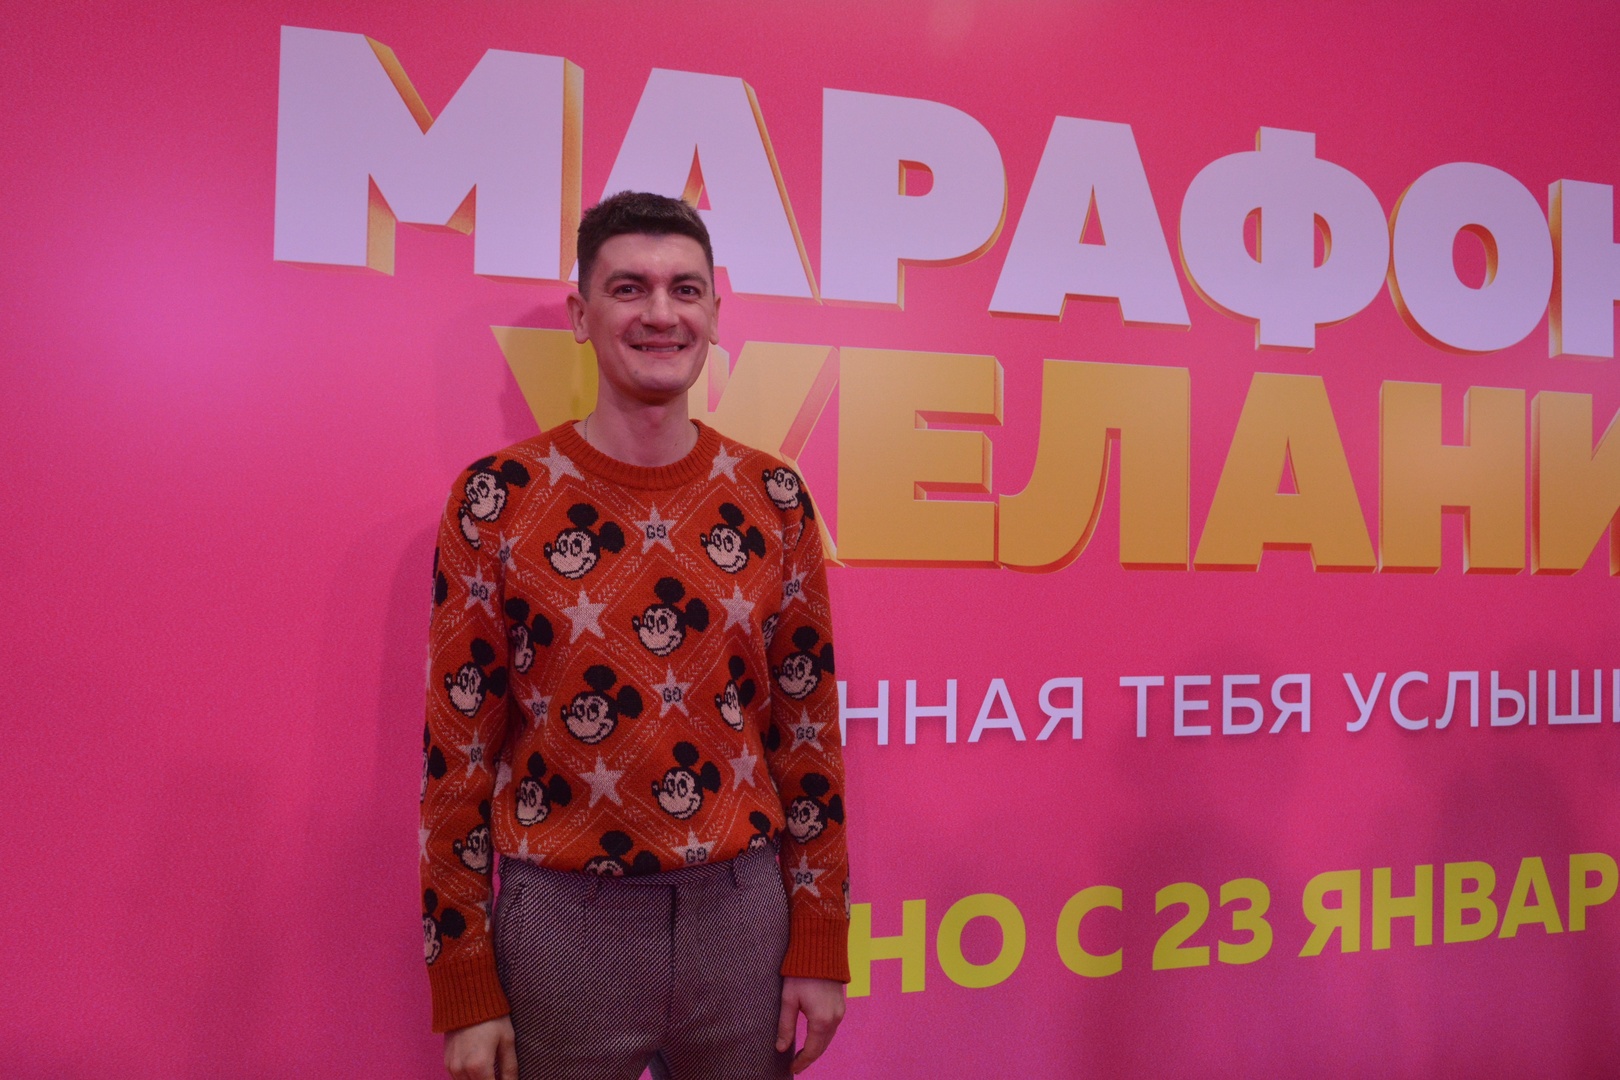 Общественники попросили отменить показ шоу Александра Гудкова в кинотеатрах